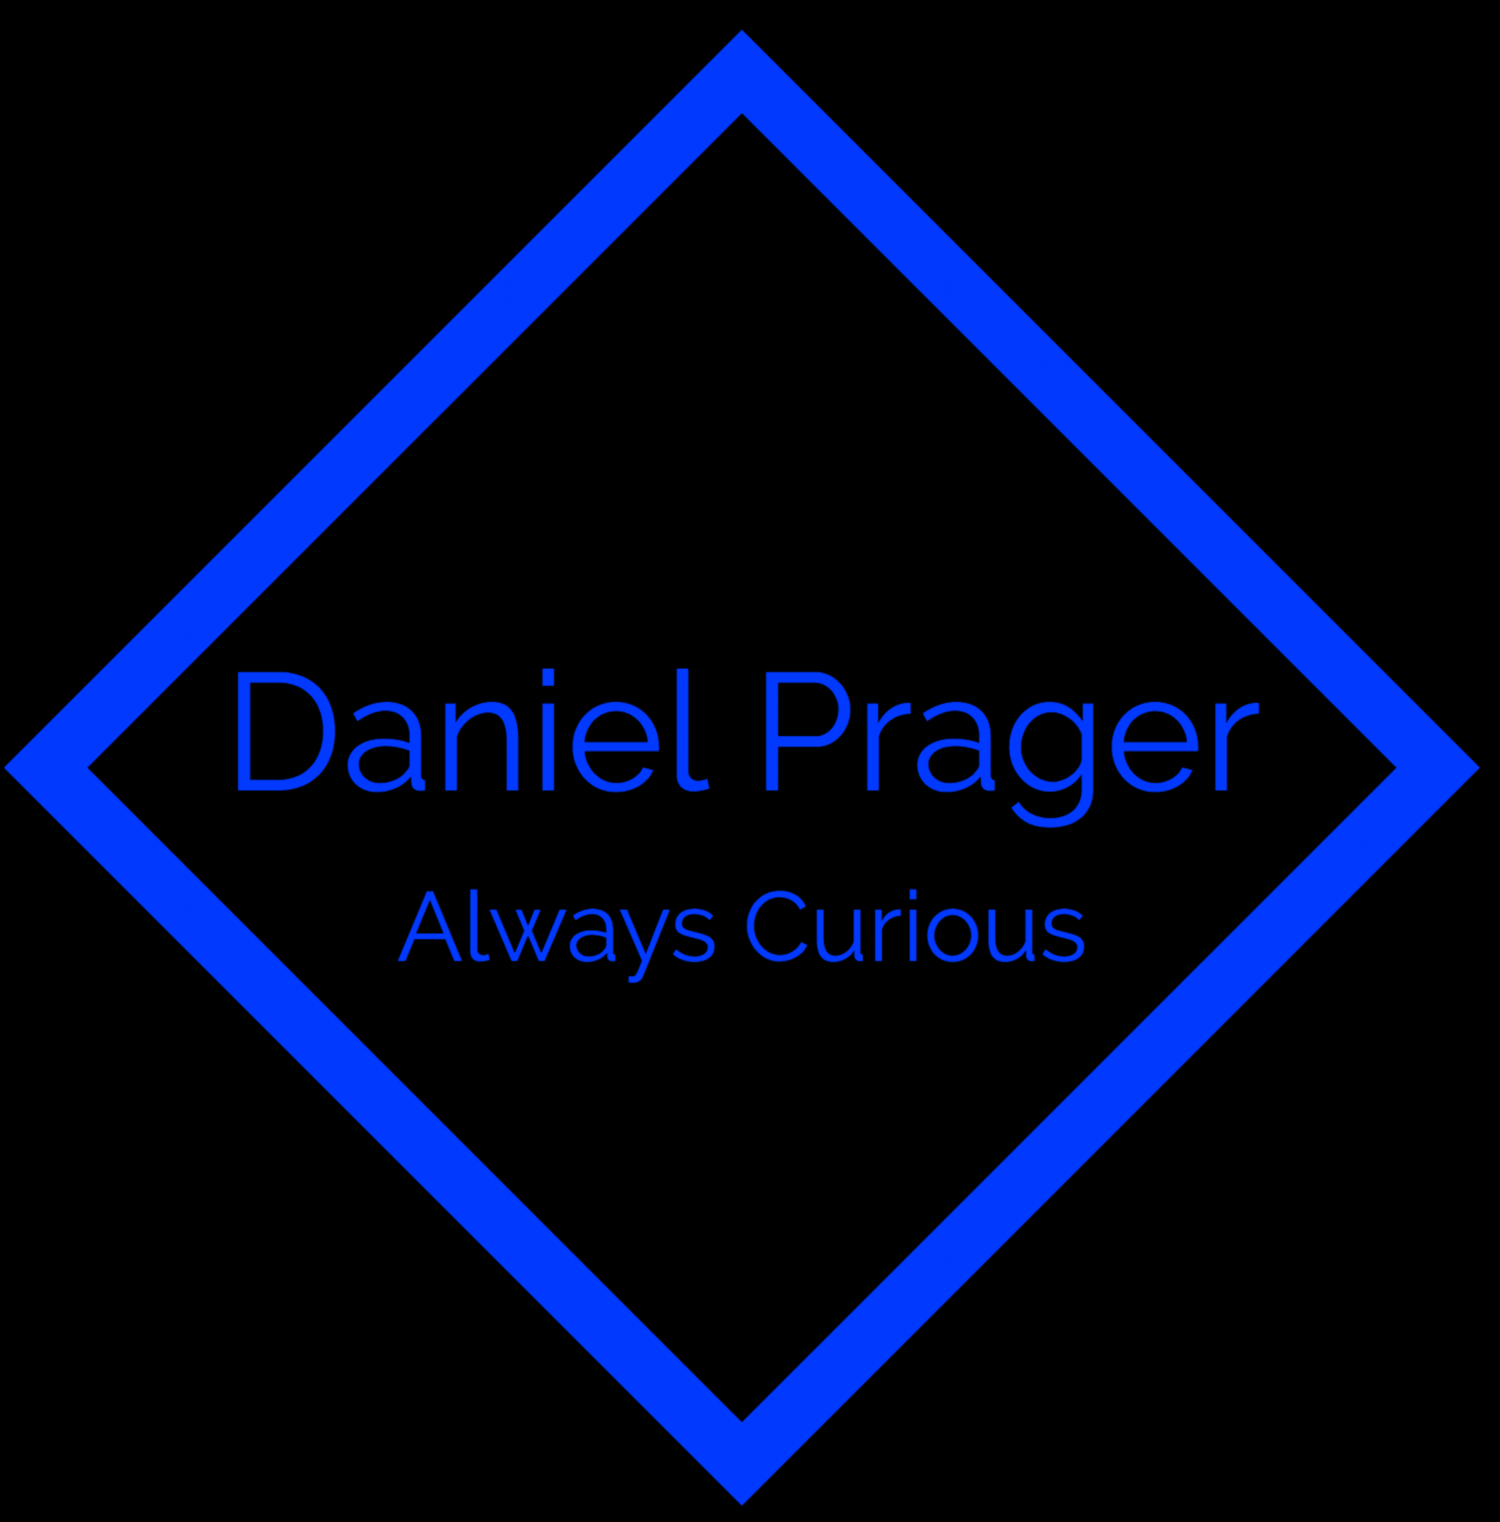 Daniel Prager